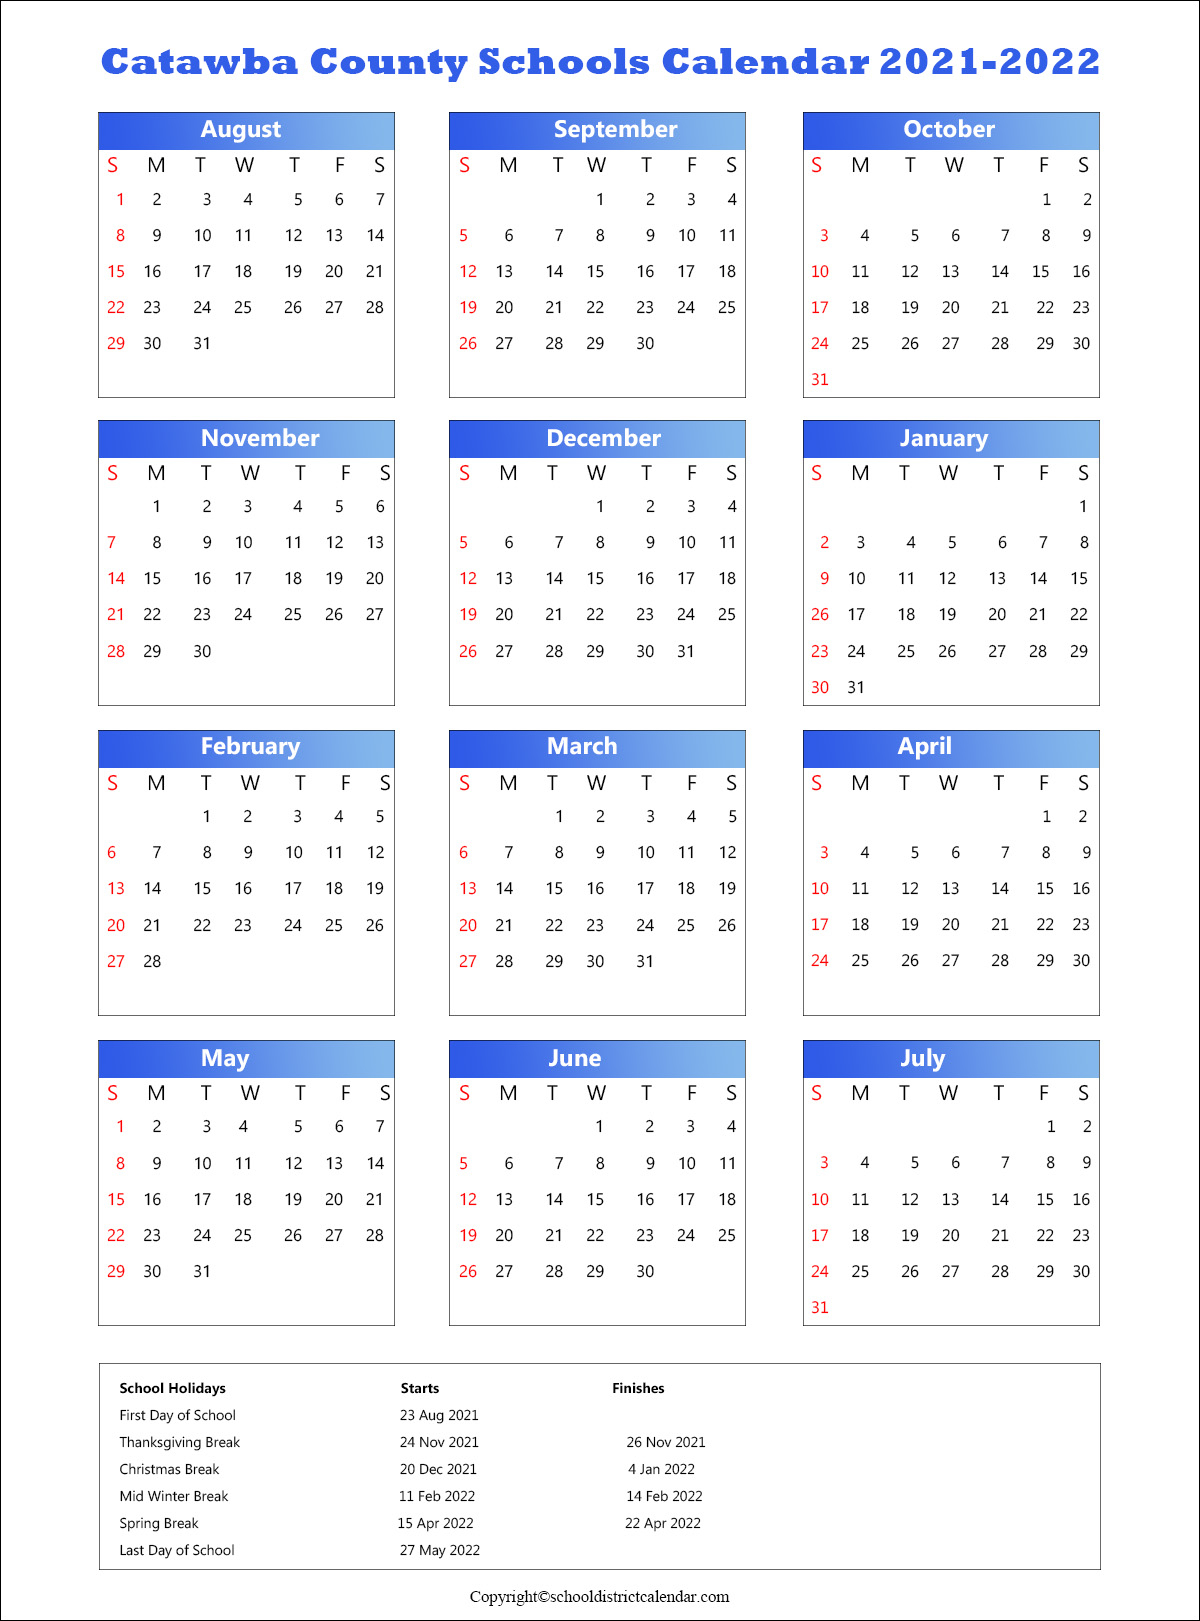 Get June 2022 Calendar Kalnirnay